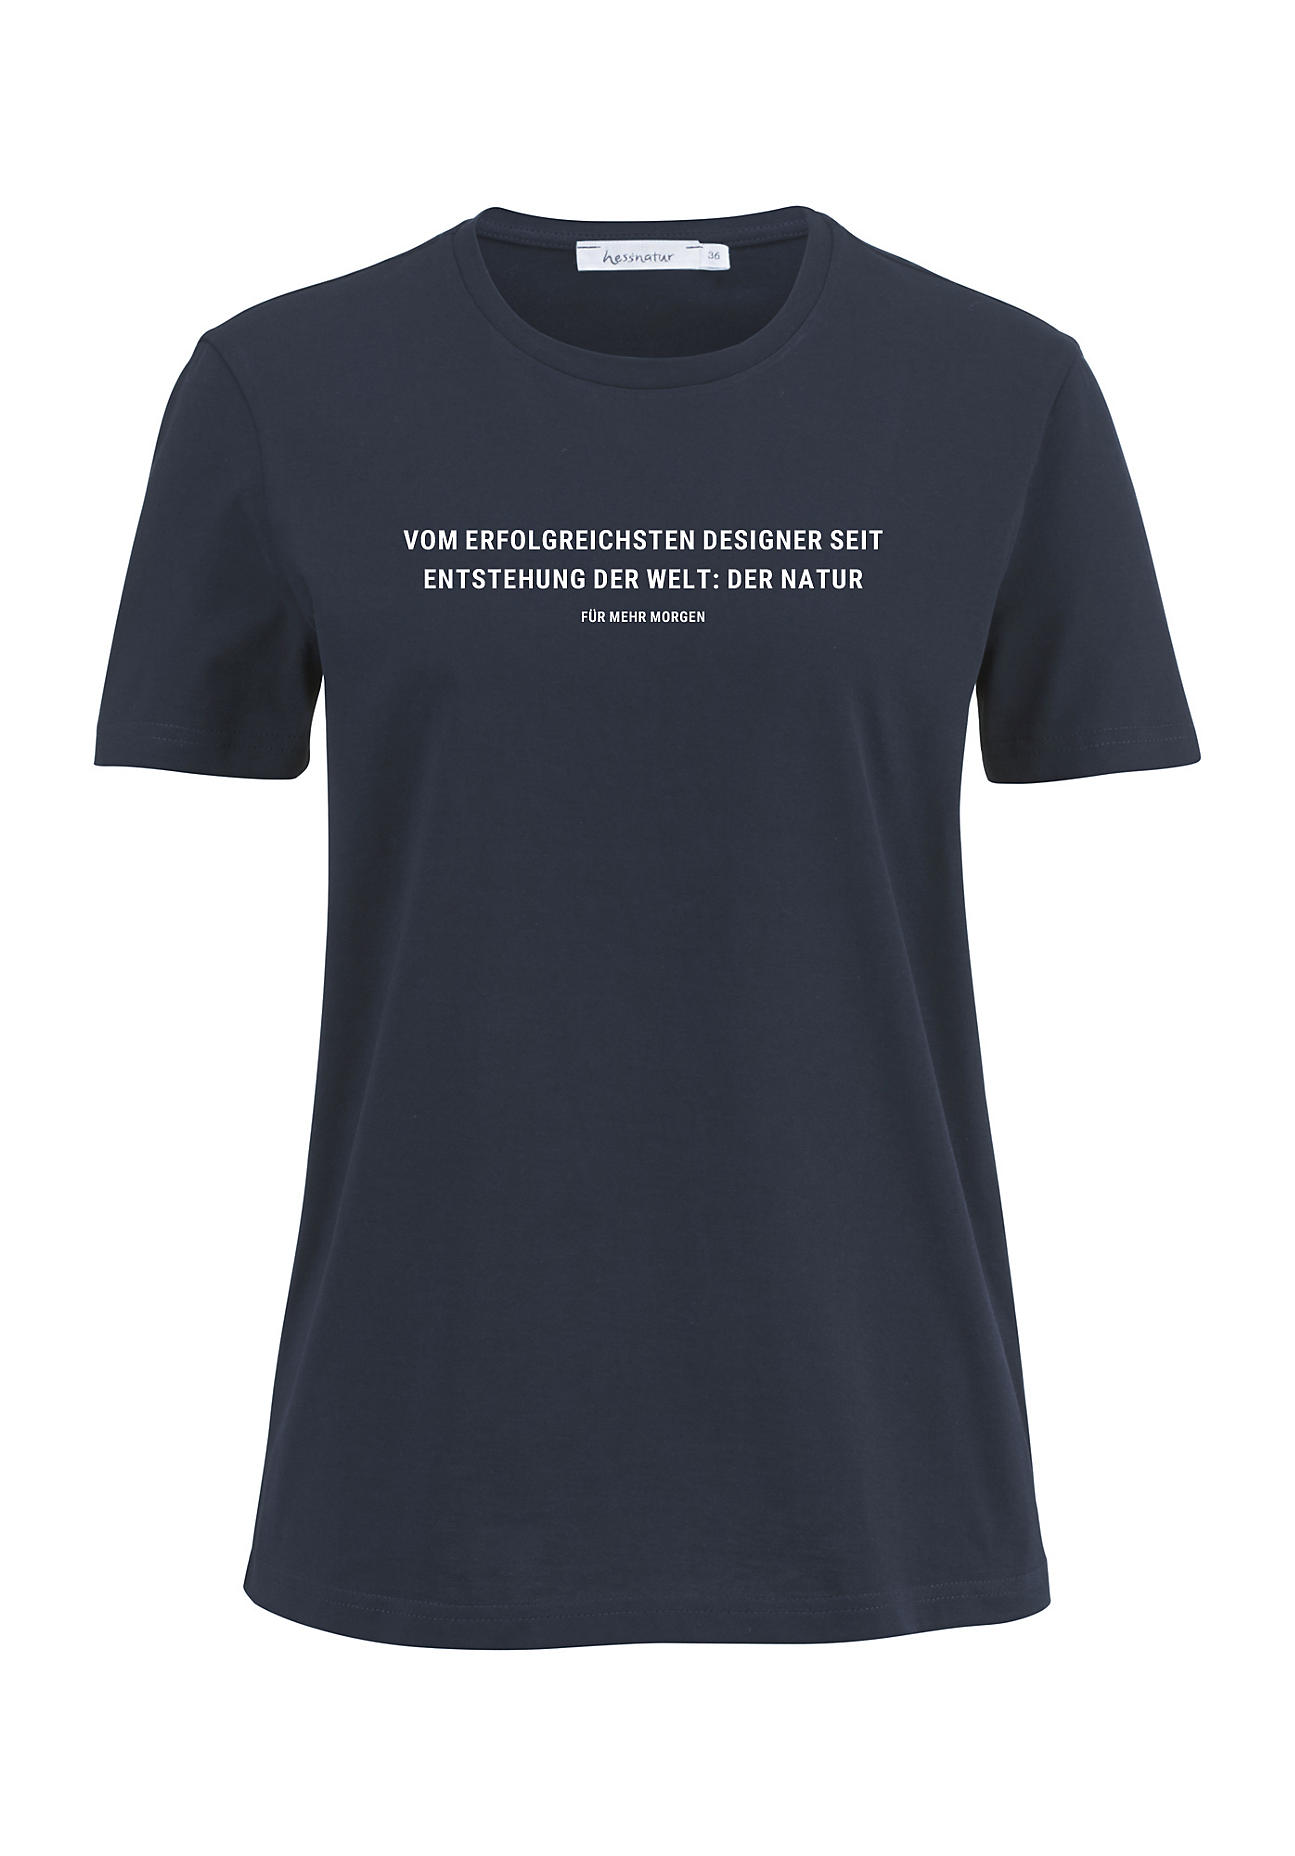 hessnatur Damen Statement Shirt aus Bio-Baumwolle - blau - Größe 46